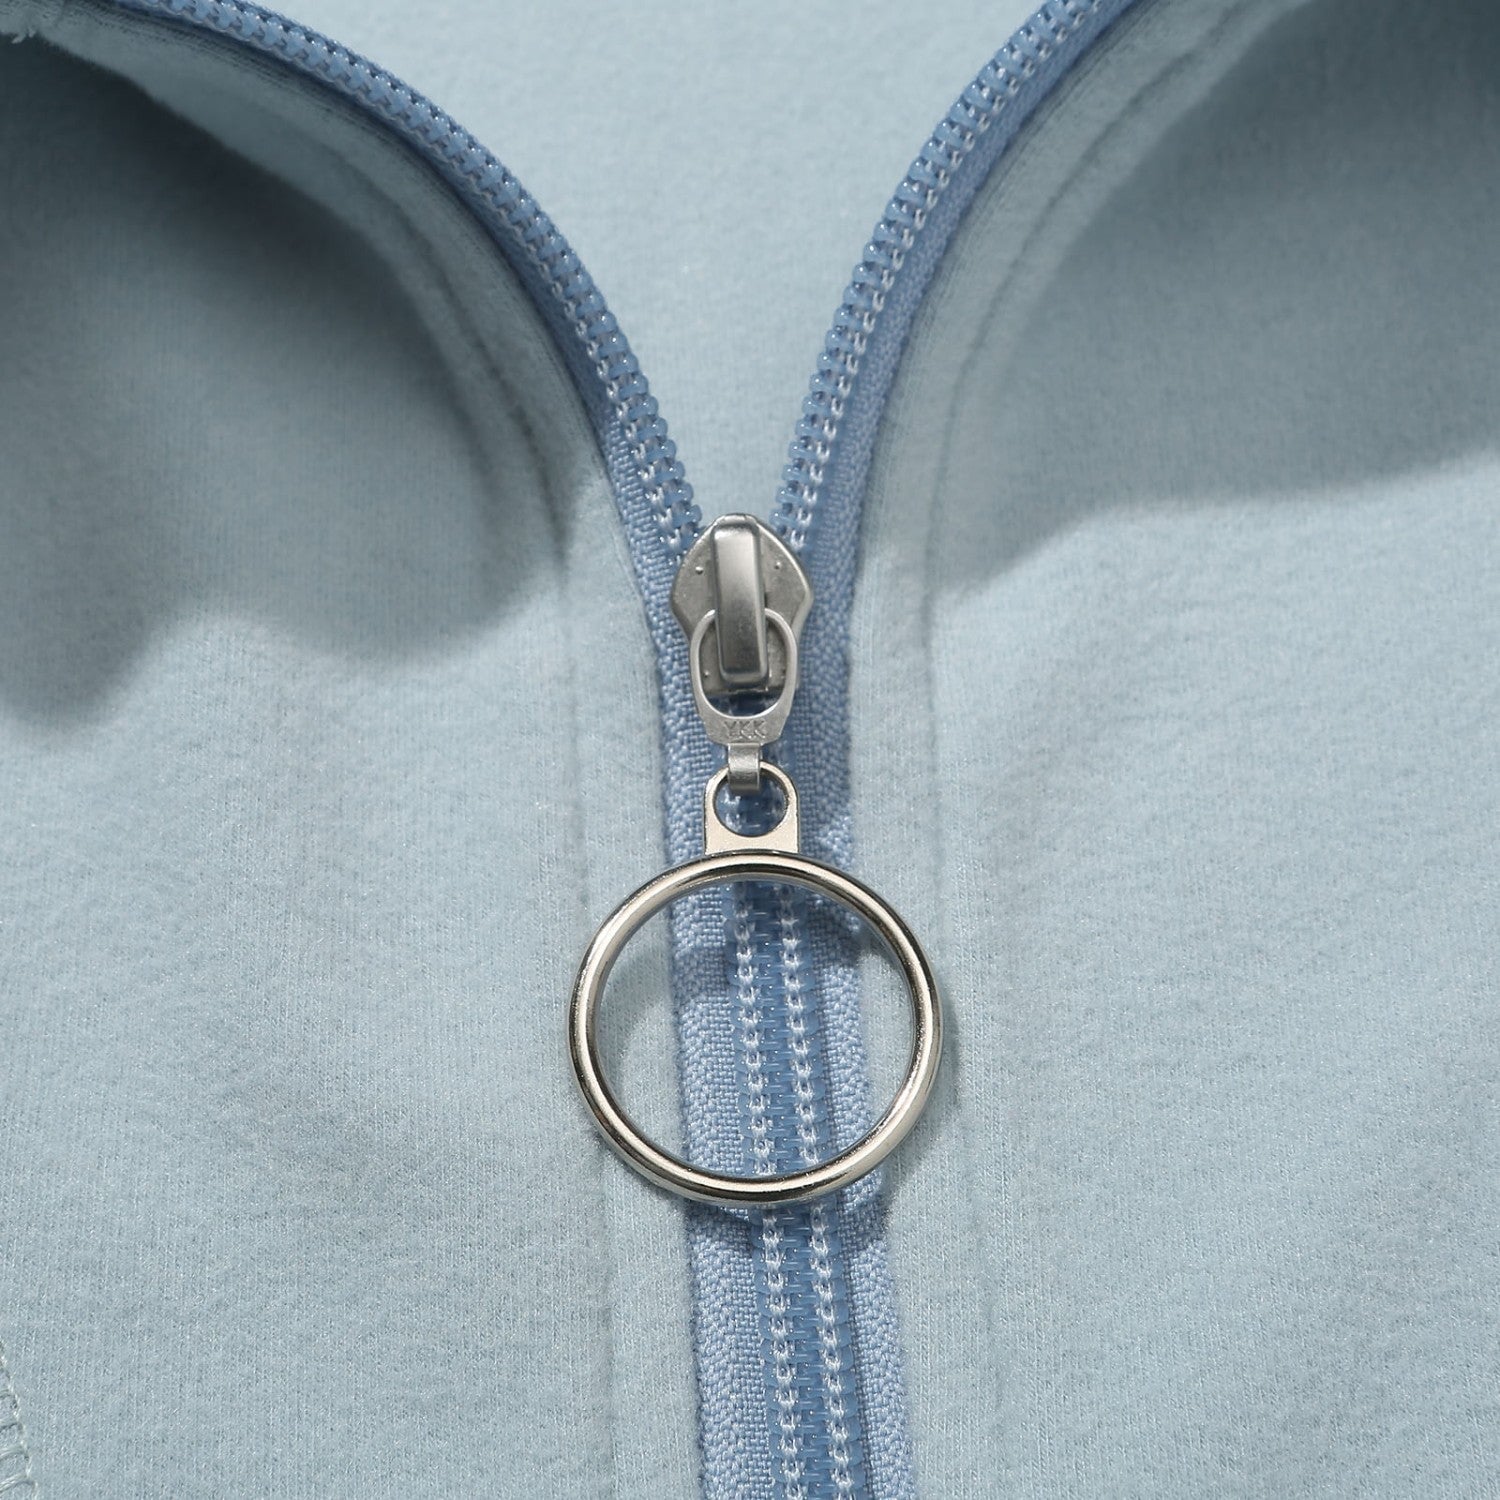 Hélas Super Soft Quarter Zip Sweater - Baby Blue Hélas 